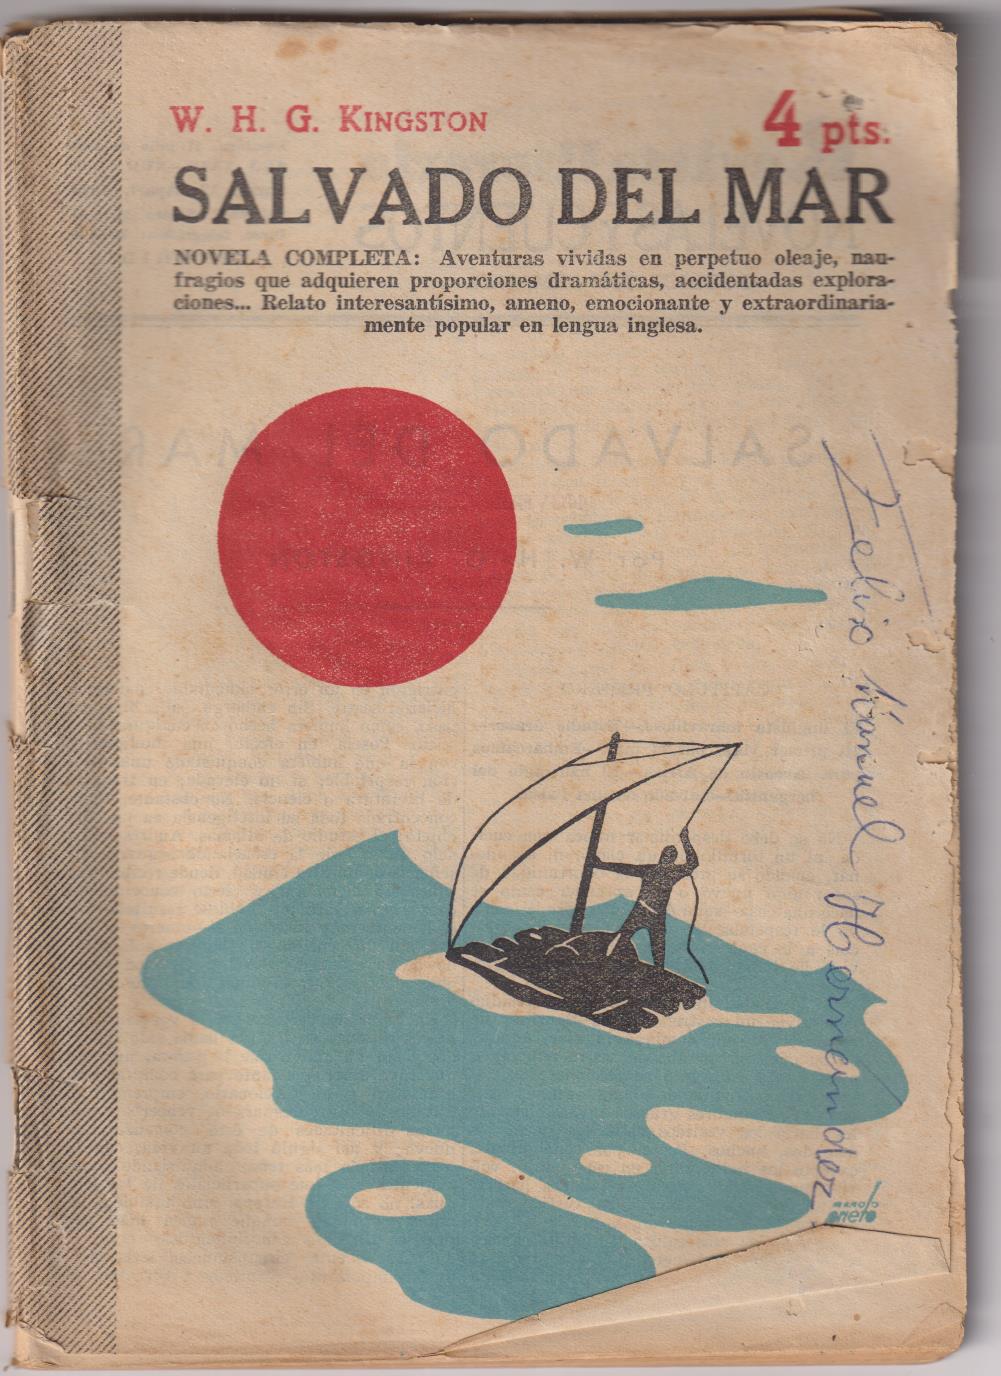 Revista Literaria Novelas y Cuentos. Salvado del mar por W.H.G. Kingston